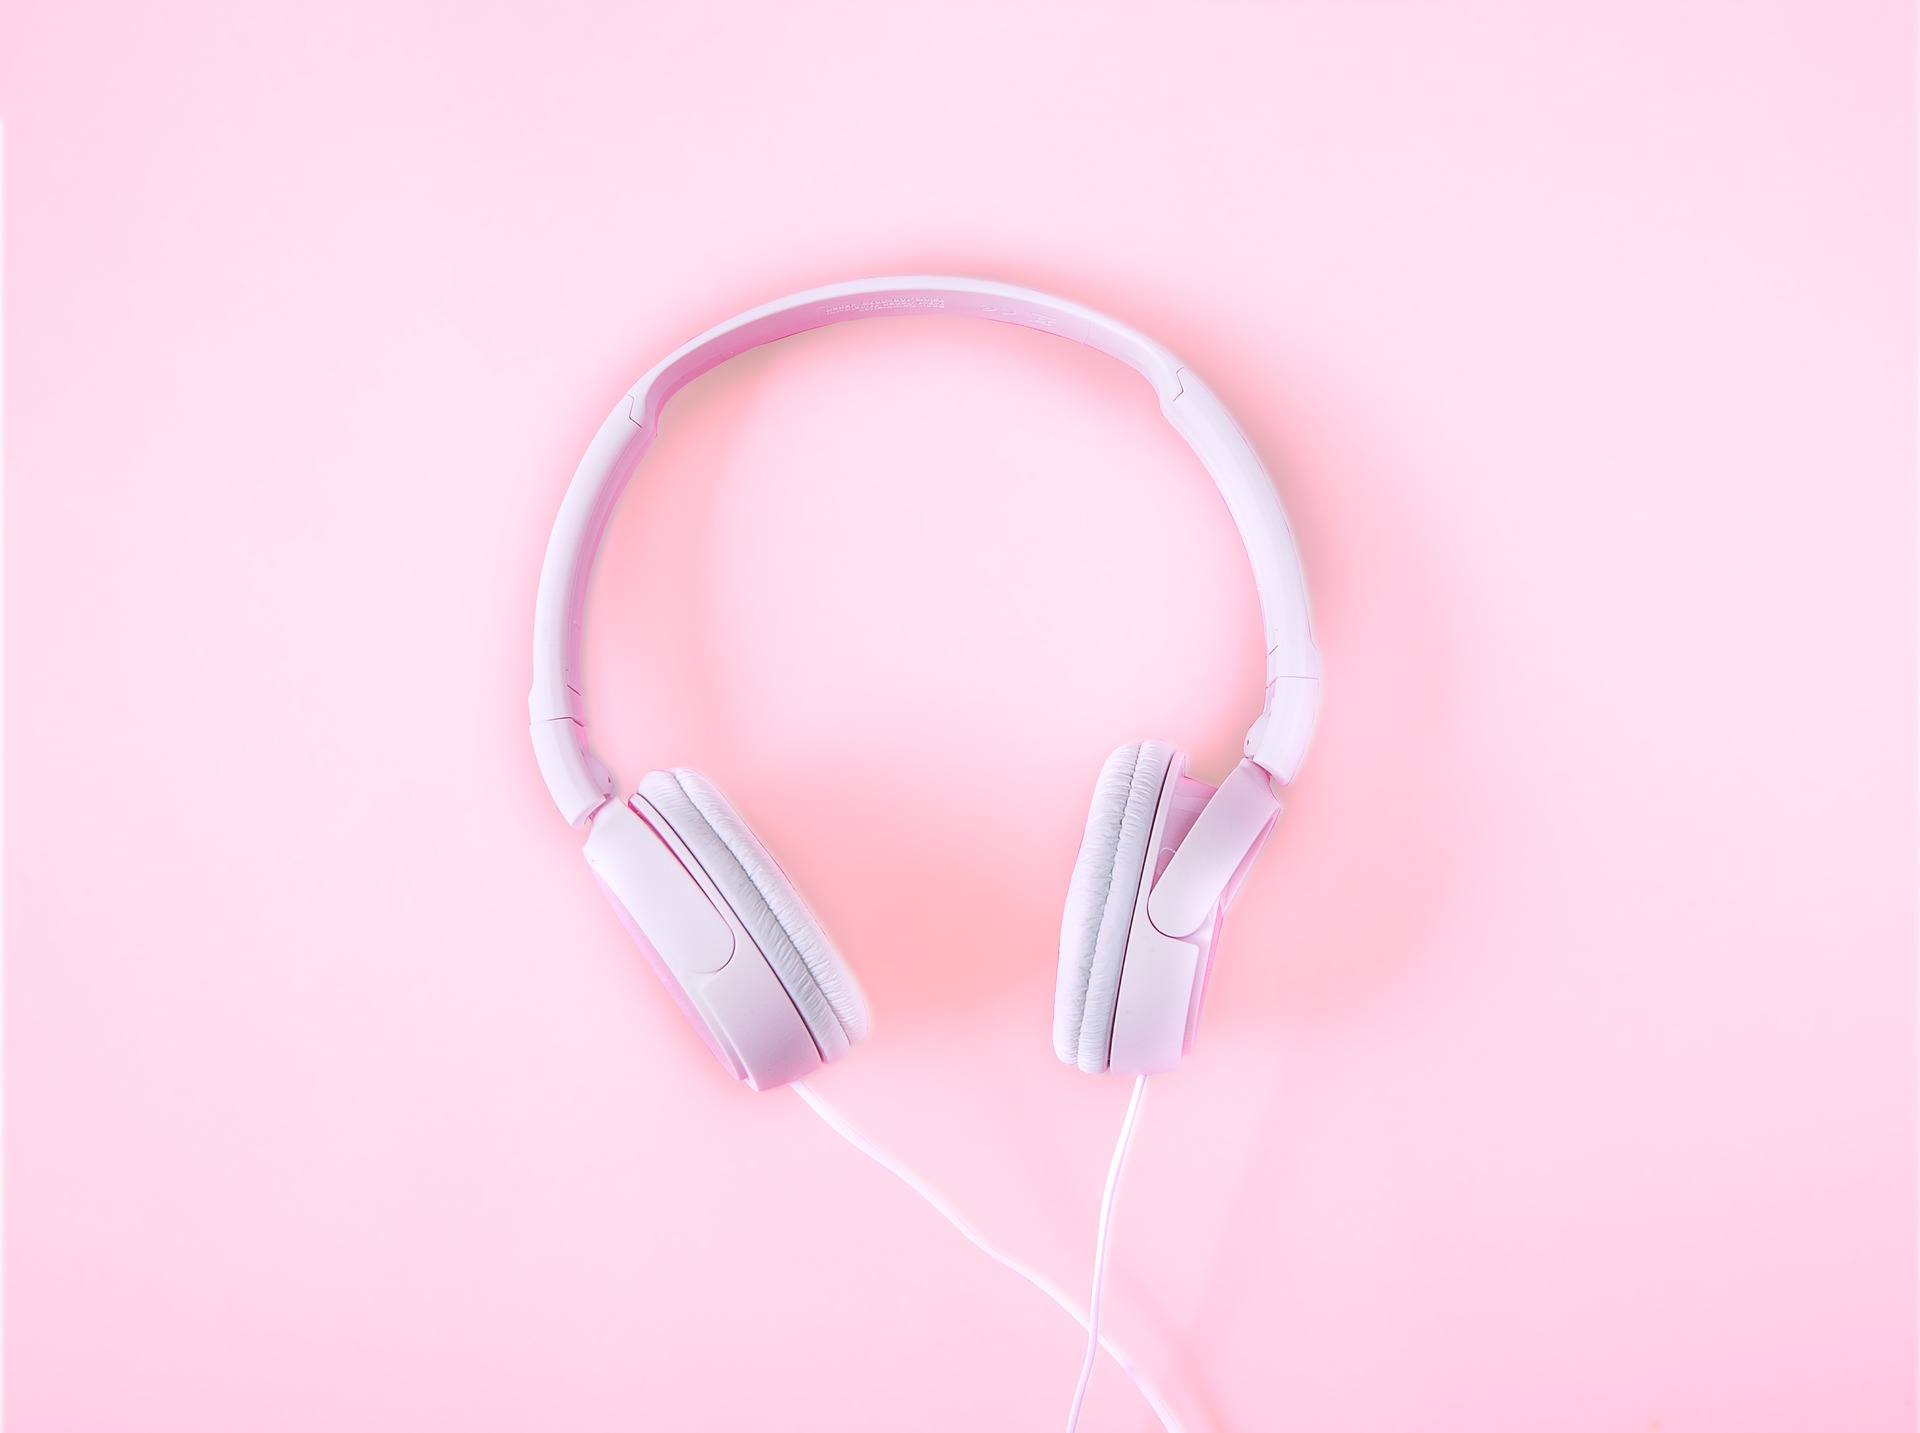 Casque audio utilisé pour écouter de l’ASMR, une méthode de relaxation auditive